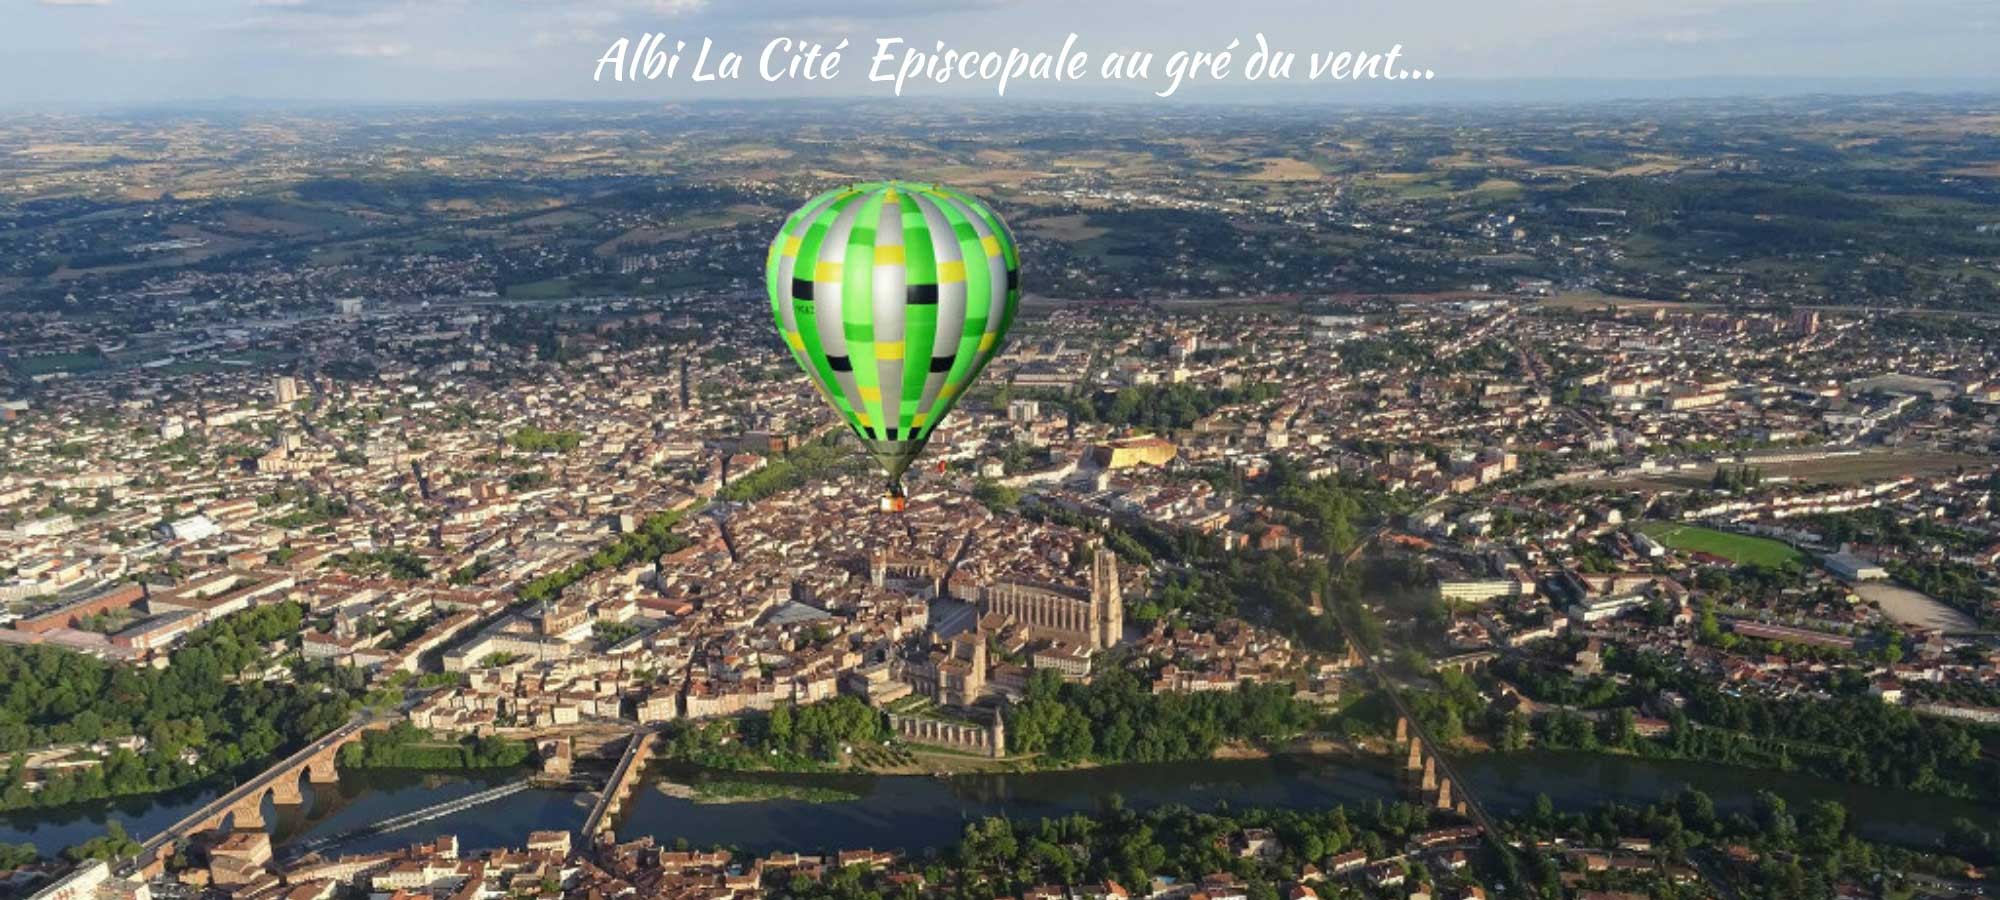 Visite d' Albi La Cité Episcopale en montgolfière